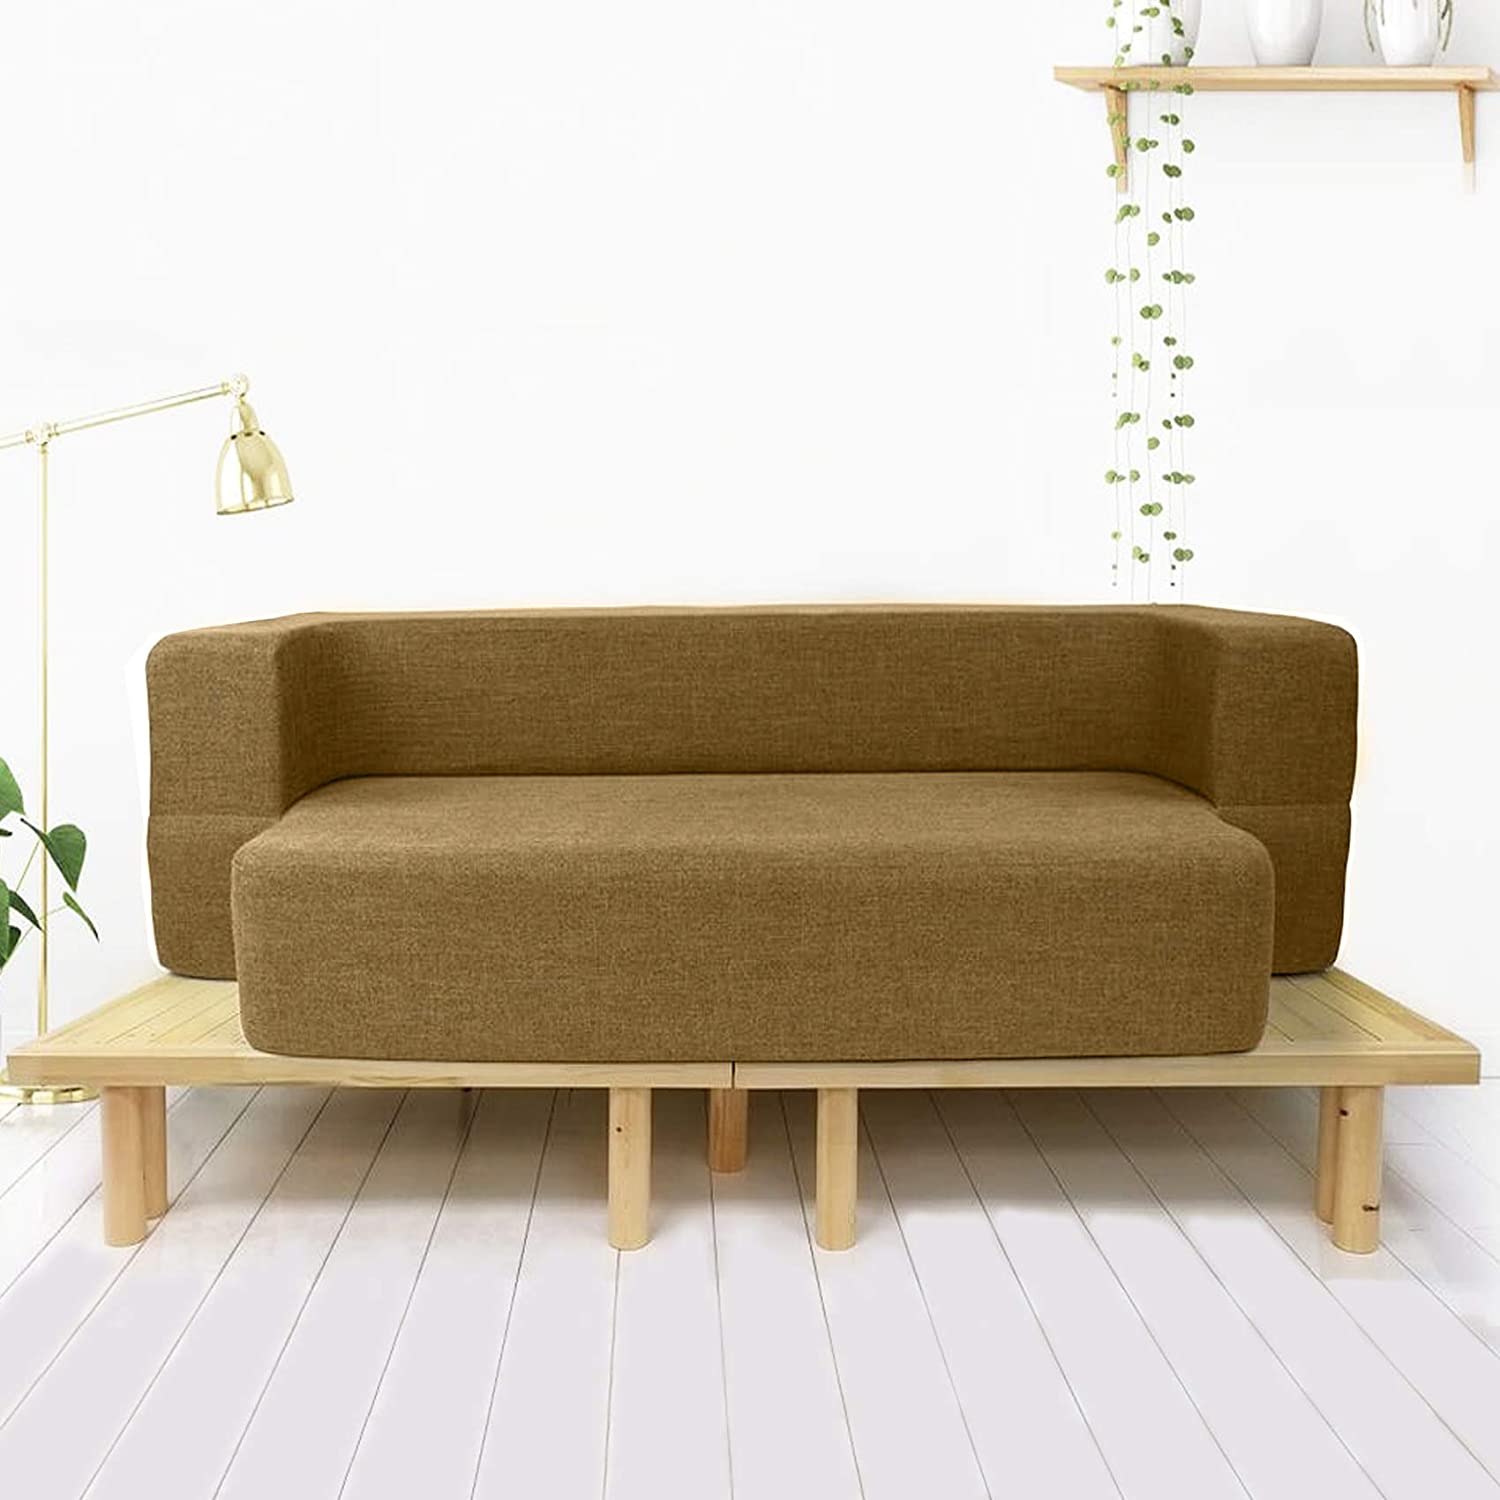 sofa-cum-bed-mattress-1-1.jpg